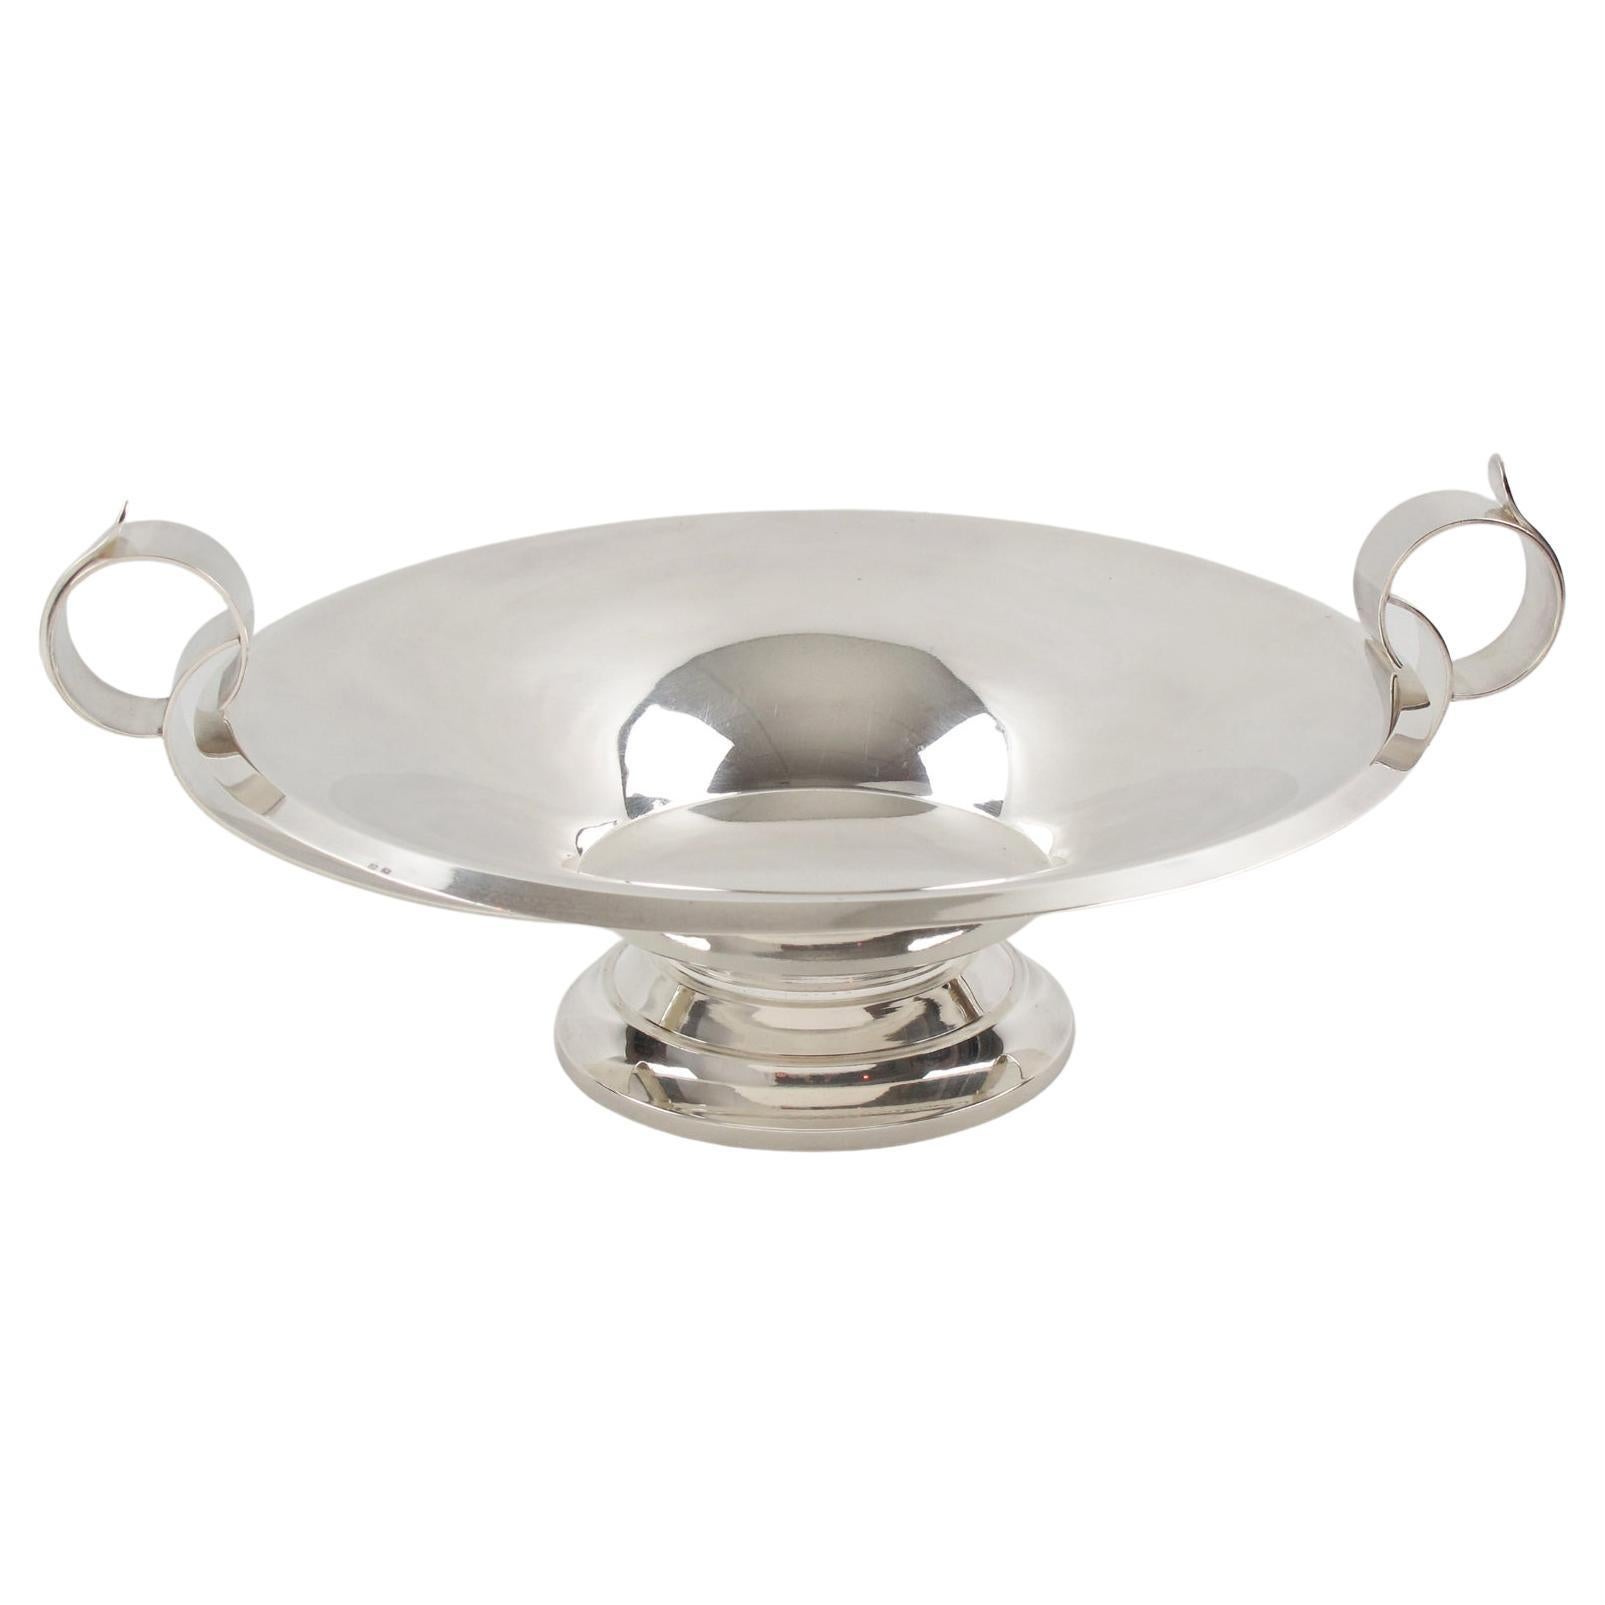 Art Deco Silver Plate Decorative Bowl Centerpiece, France 1930s For Sale